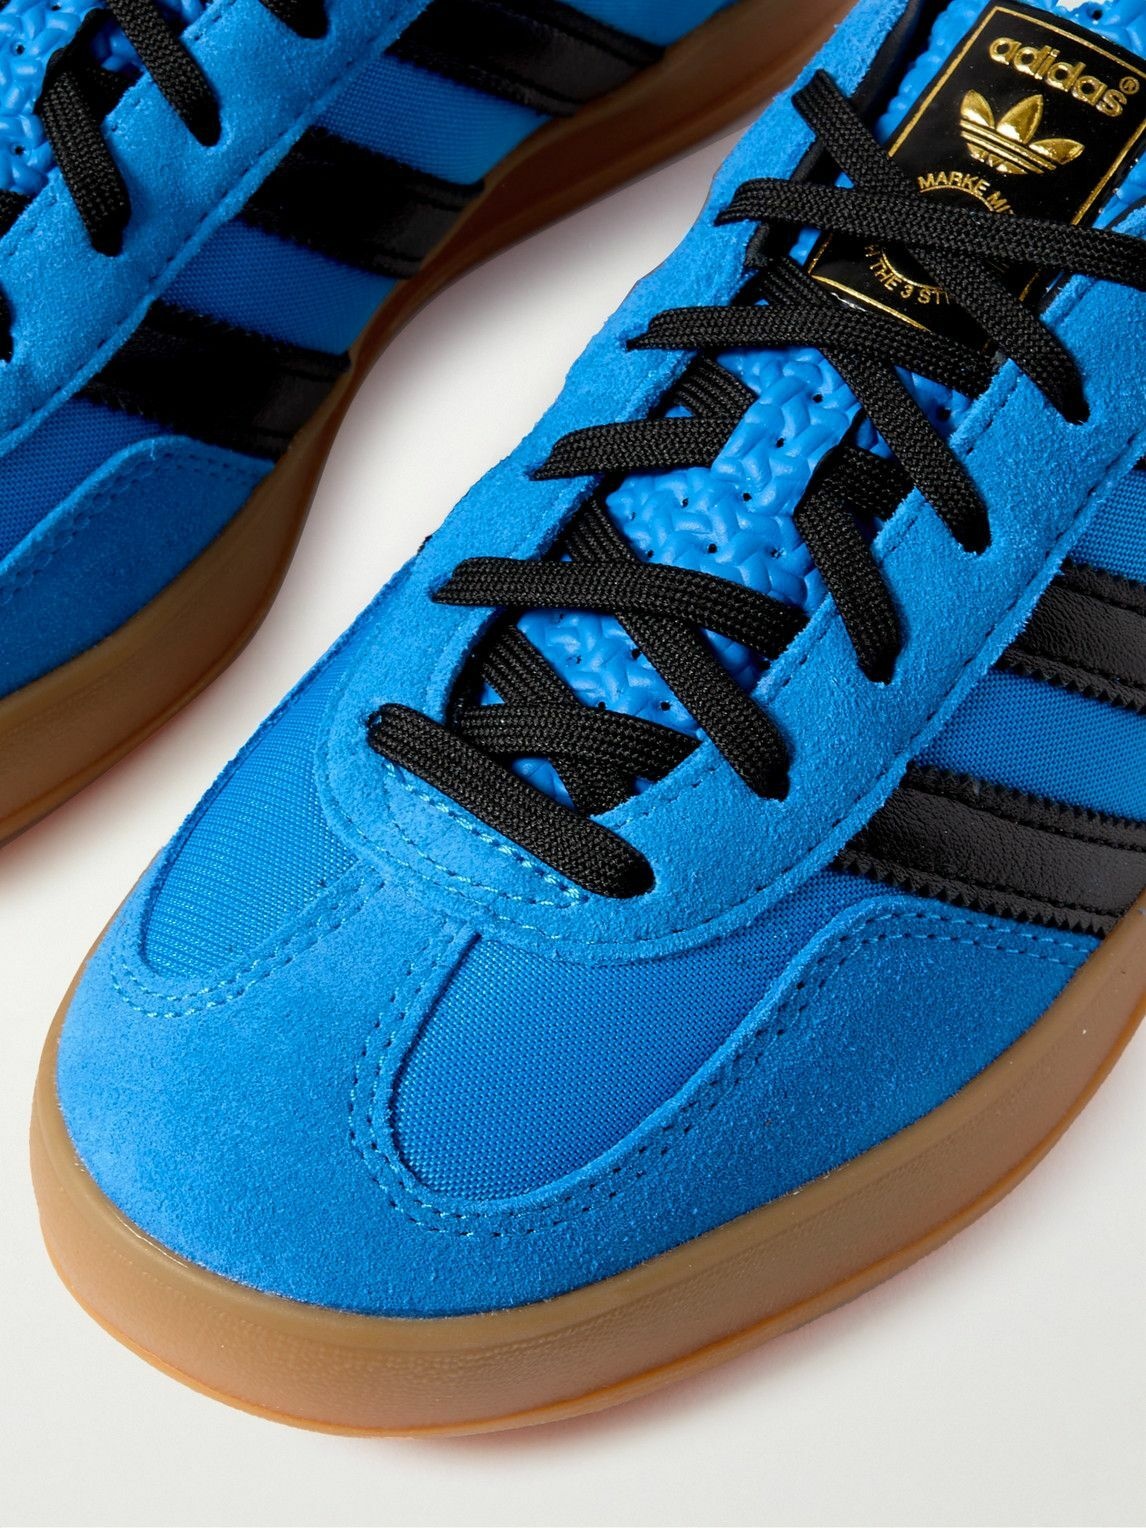 Buy adidas Originals Top Ten Low Rb Blue Sneakers Shoes Online